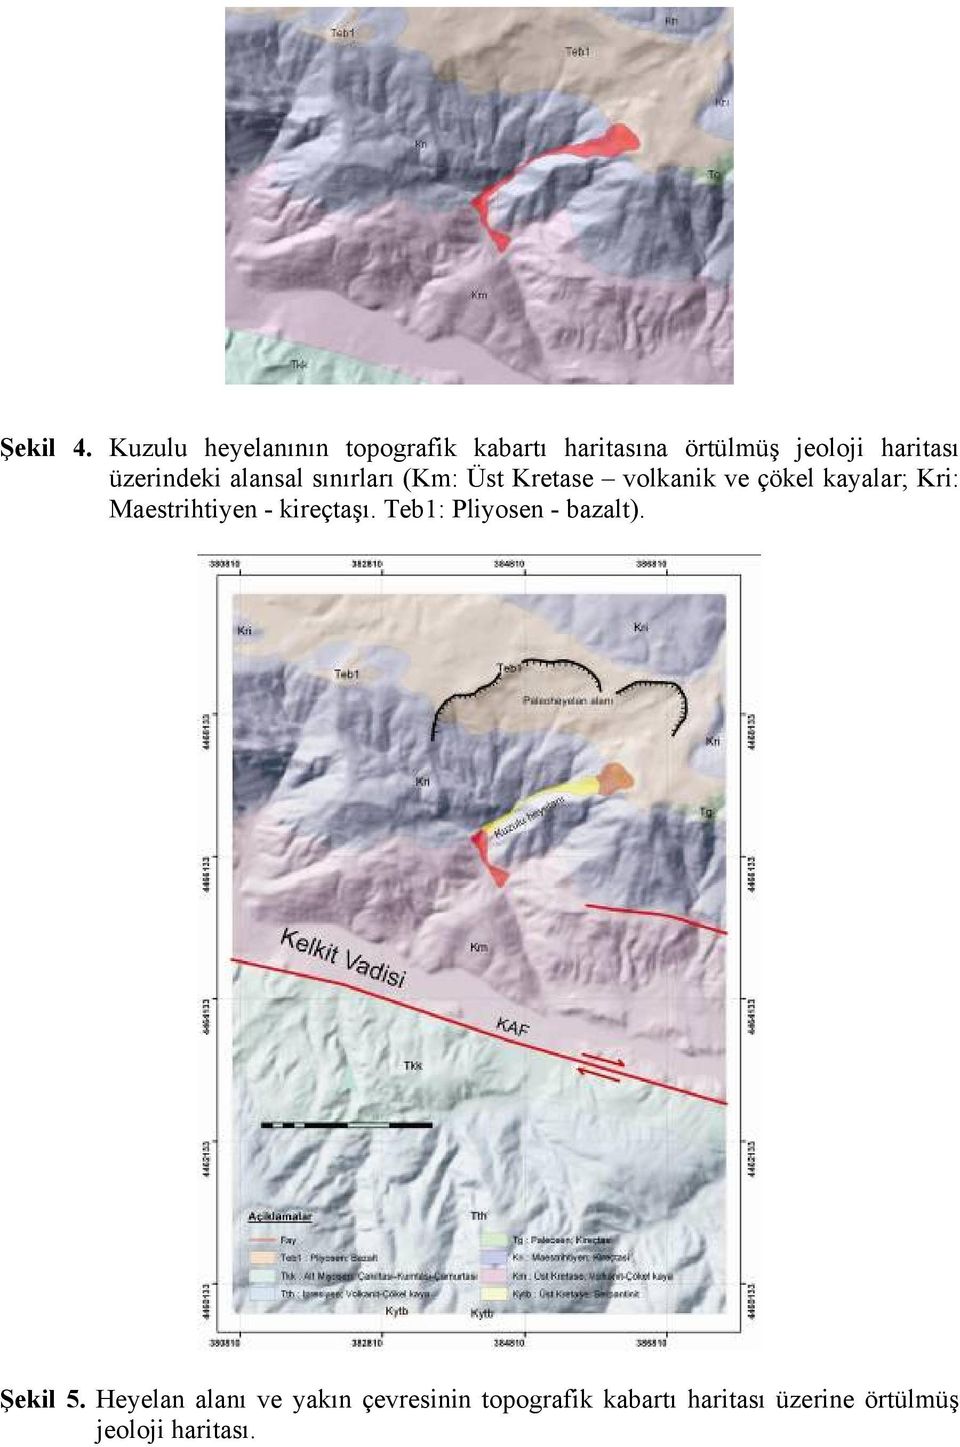 üzerindeki alansal sınırları (Km: Üst Kretase volkanik ve çökel kayalar; Kri: